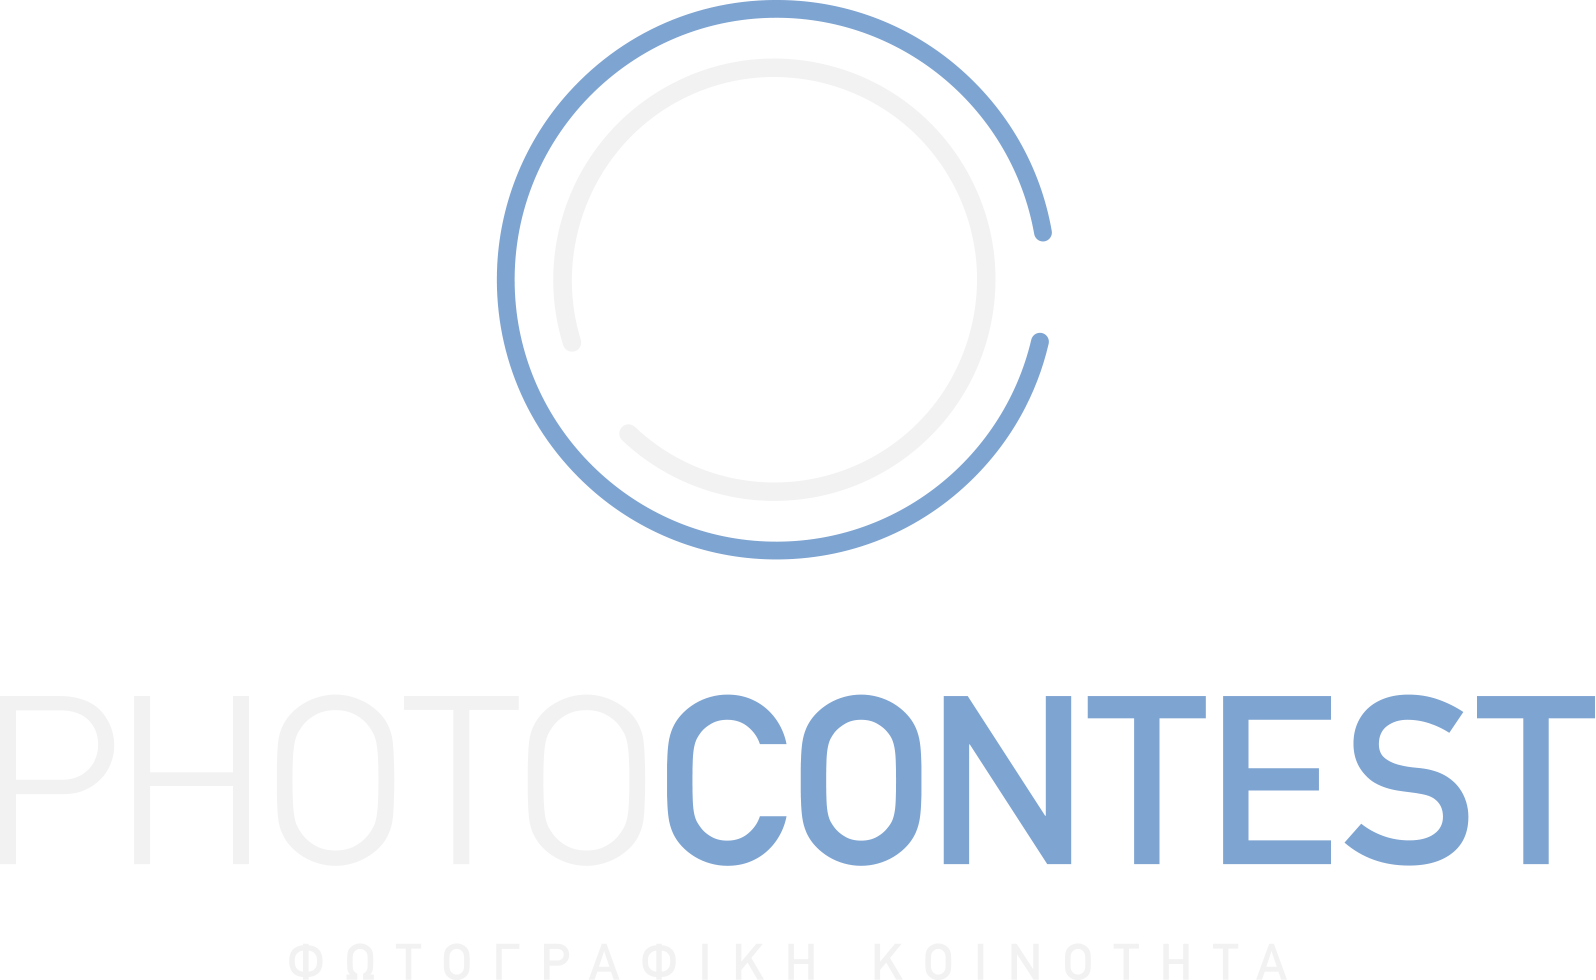 Logo design photography lens